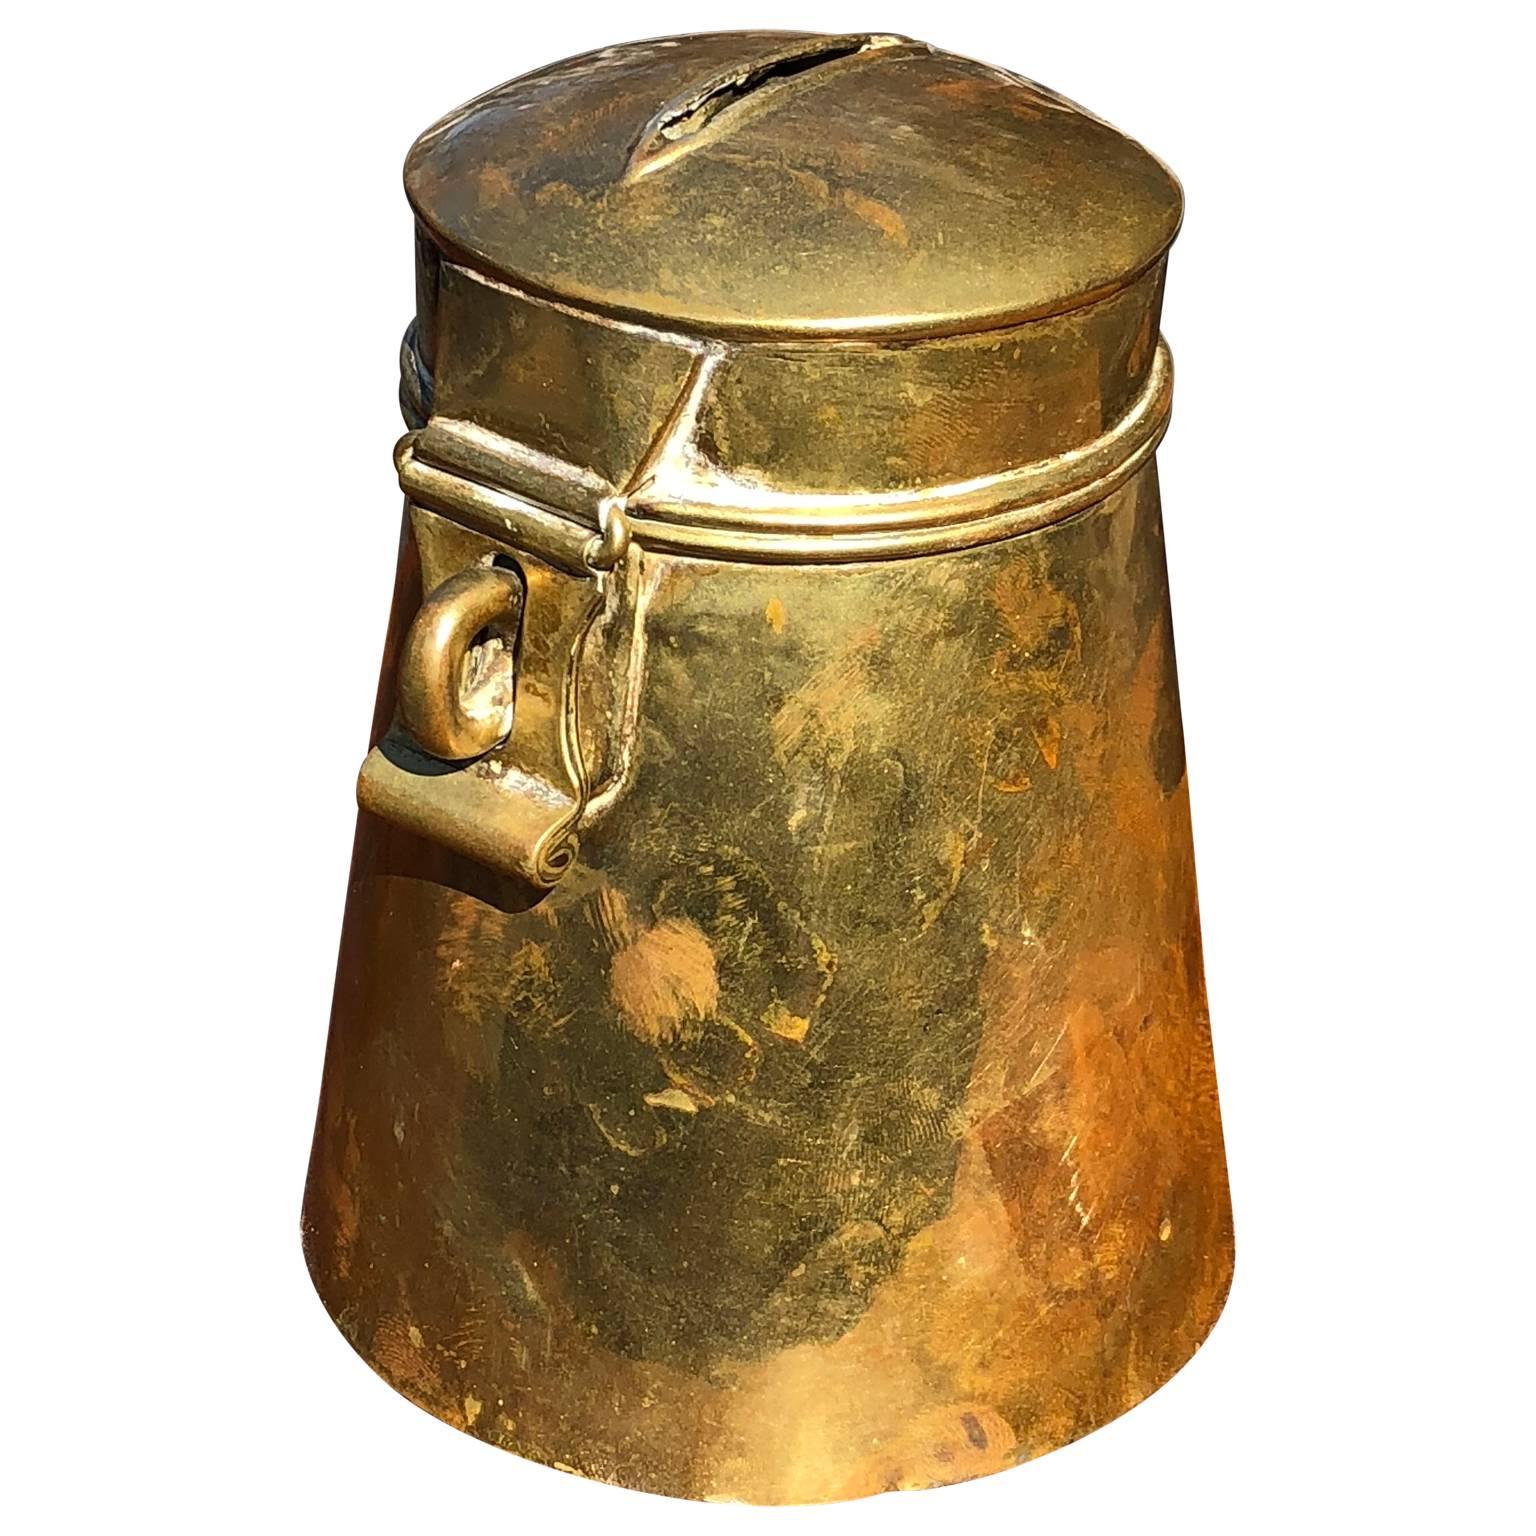 18th century Danish brass or money box.